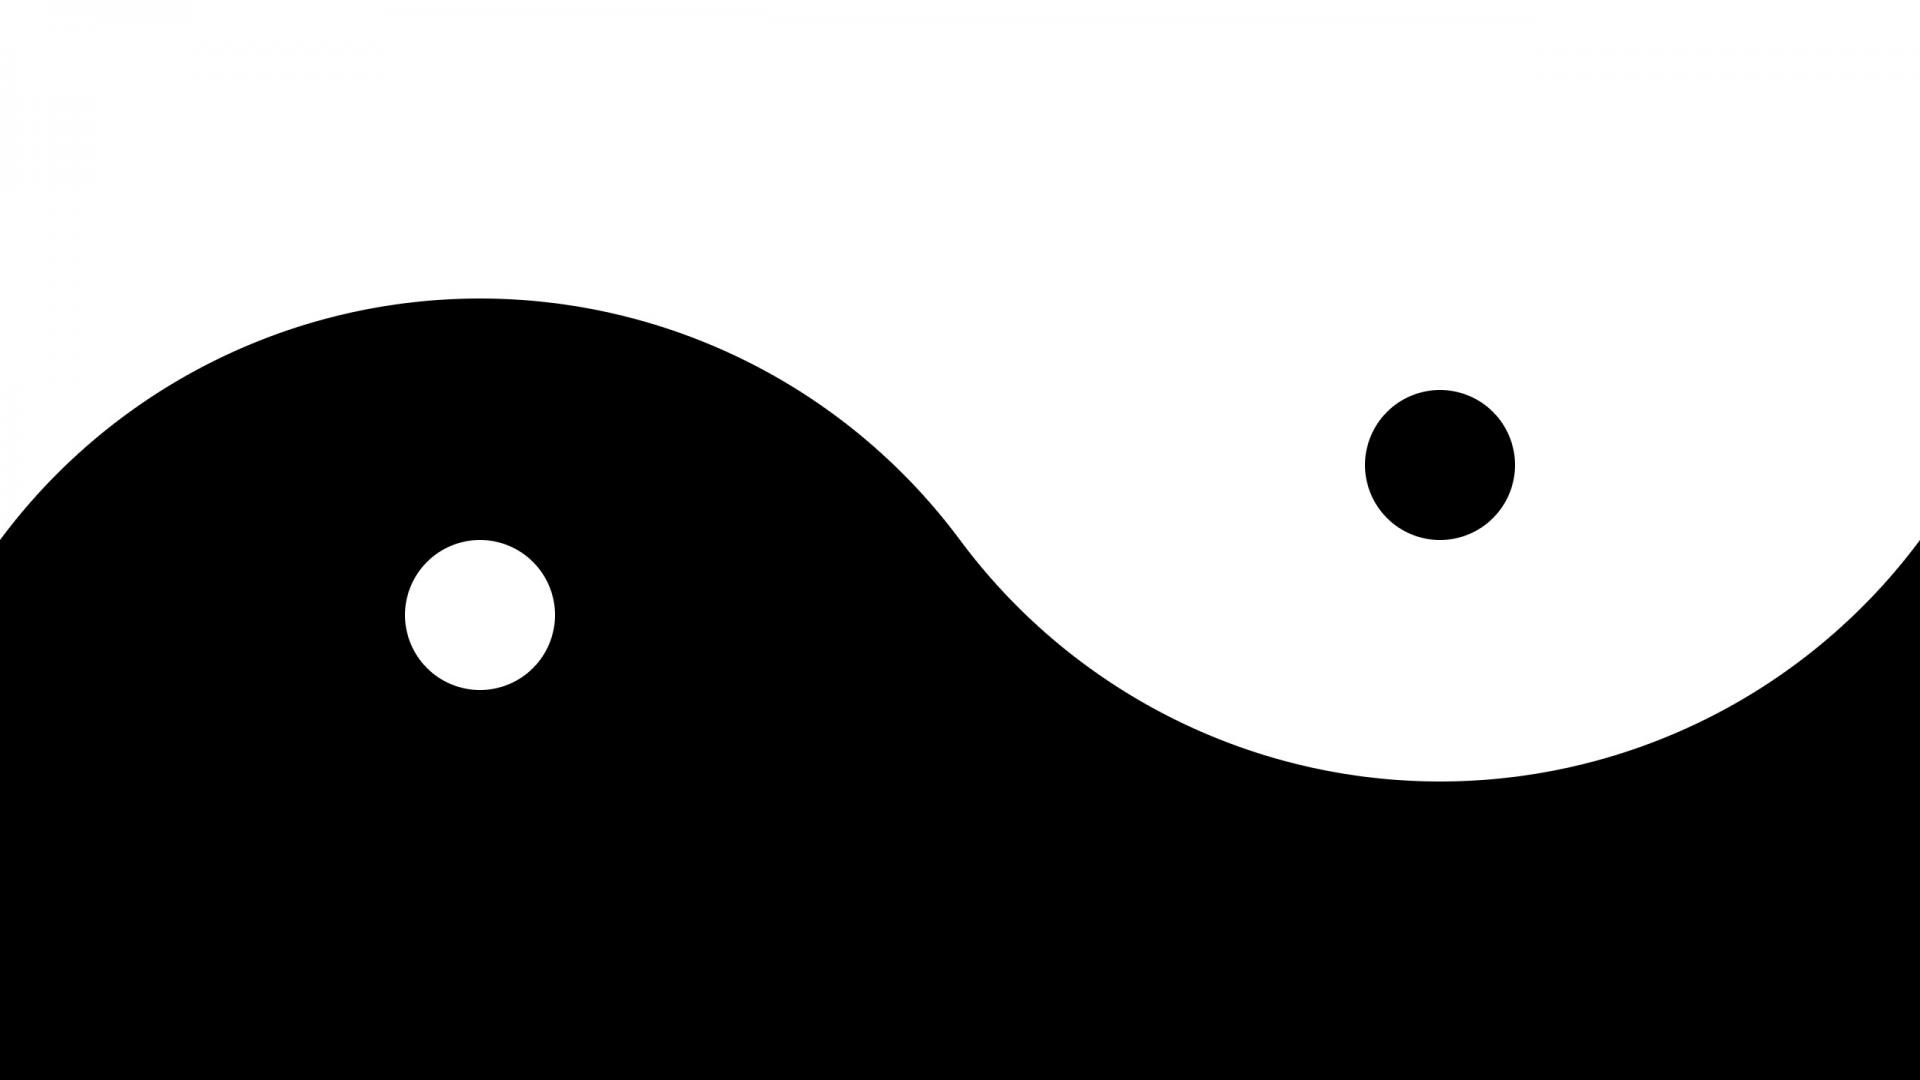 yin yang iphone wallpaper, ying yang image